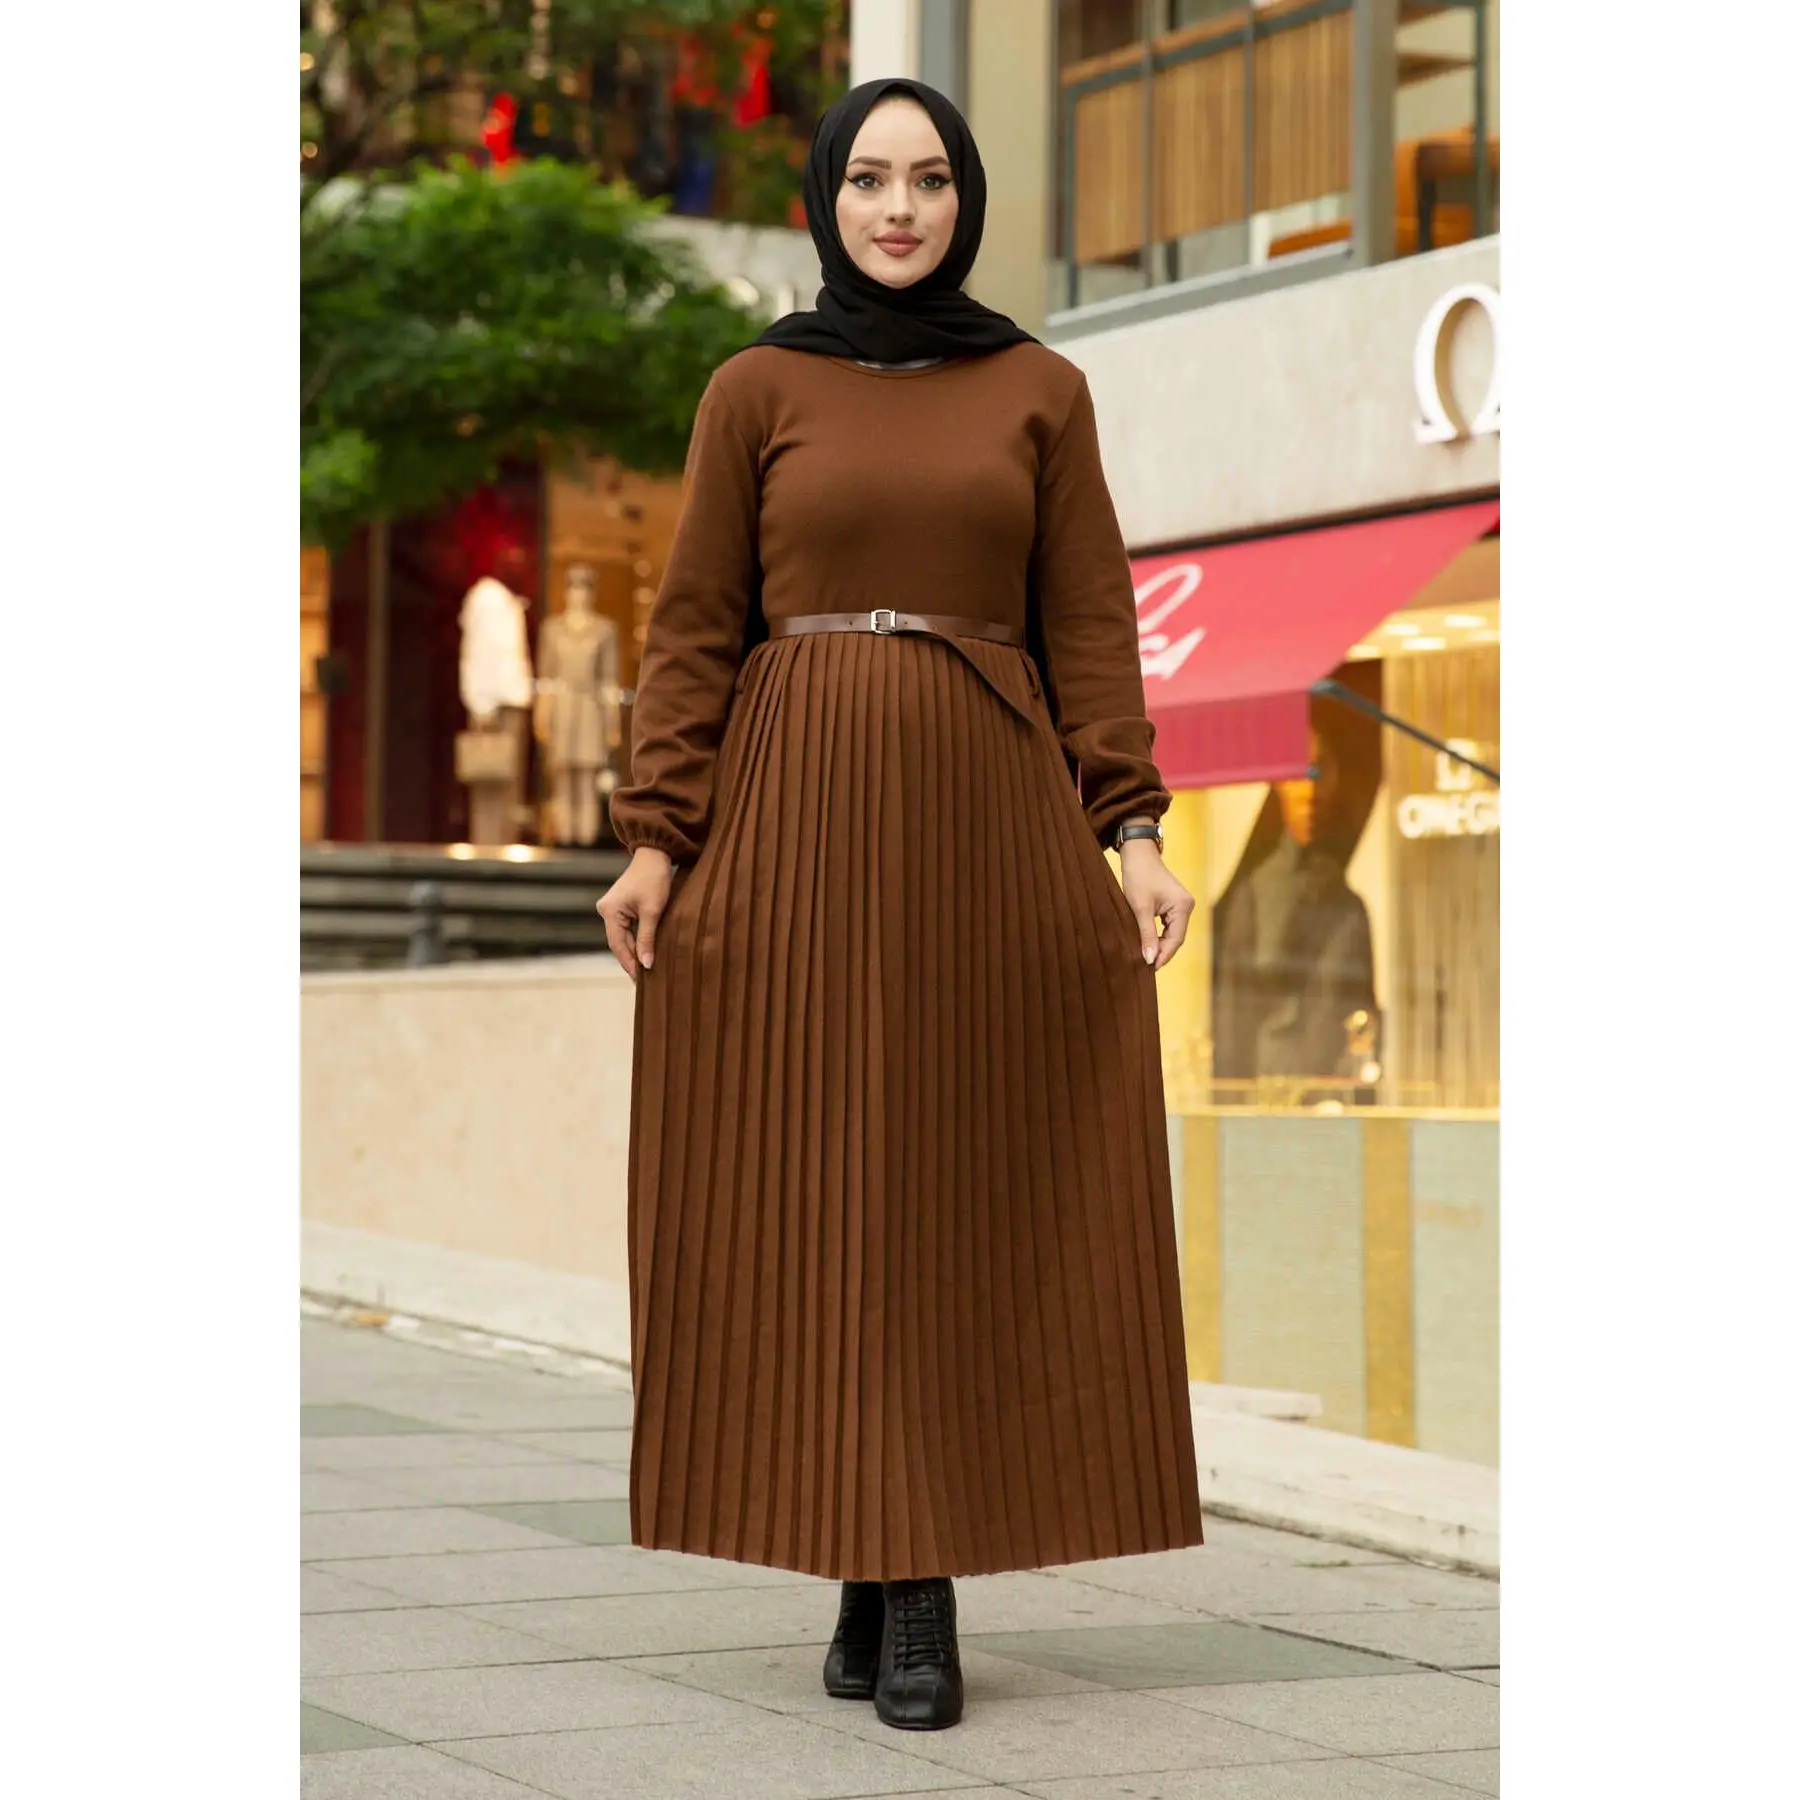 "Женское платье макси с поясом, плиссированная юбка с длинными рукавами, мусульманское модное платье, Турция, Дубай, абайя 2021"